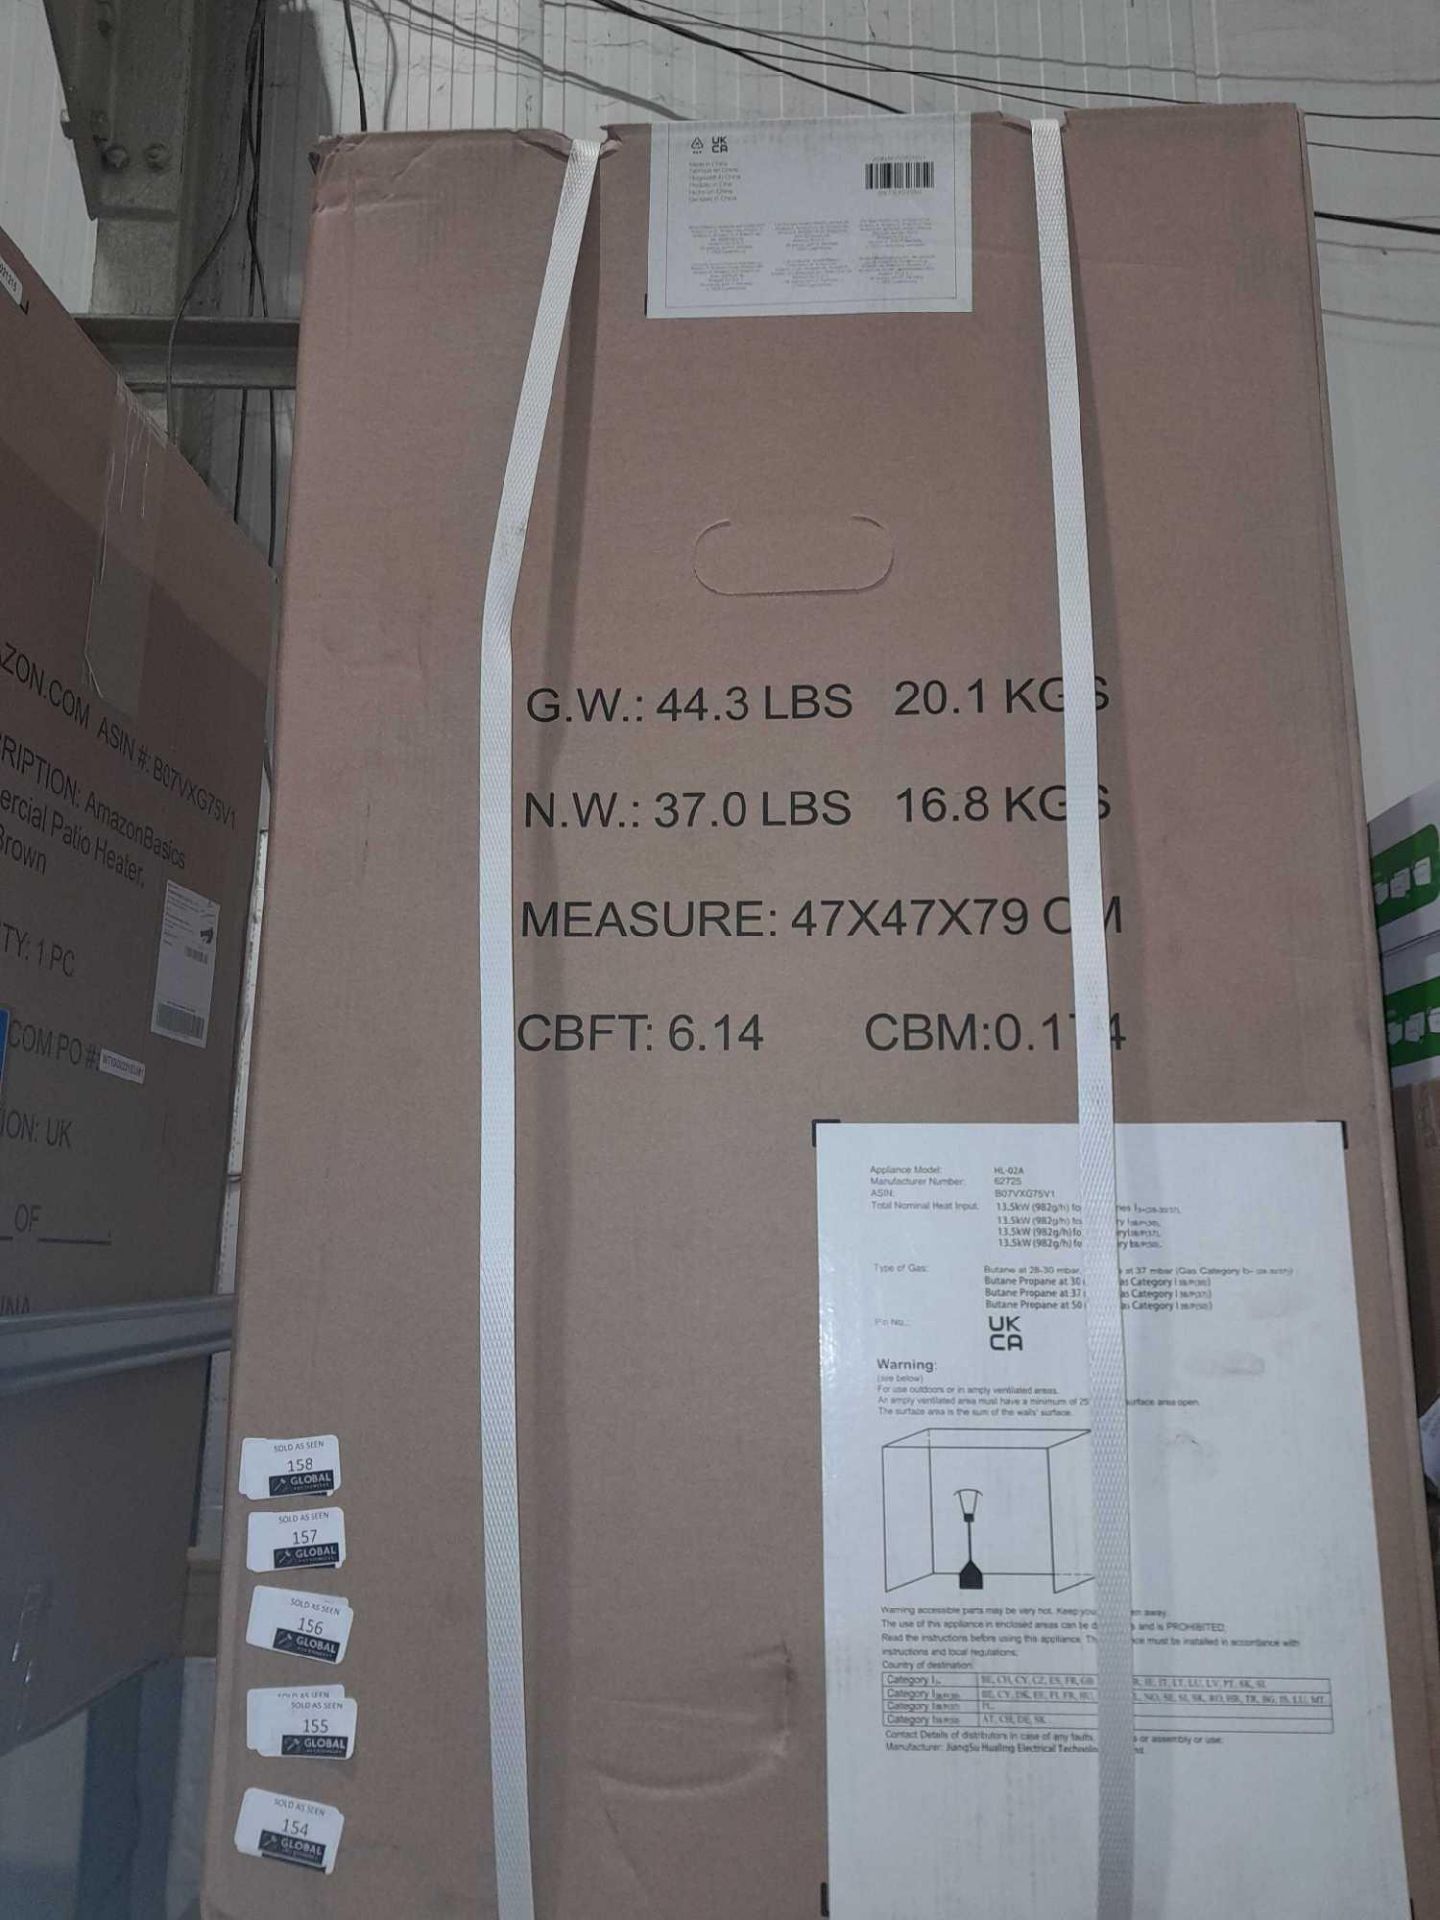 RRP £150 Factory Sealed Amazon Basics Patio Heater - Image 2 of 2